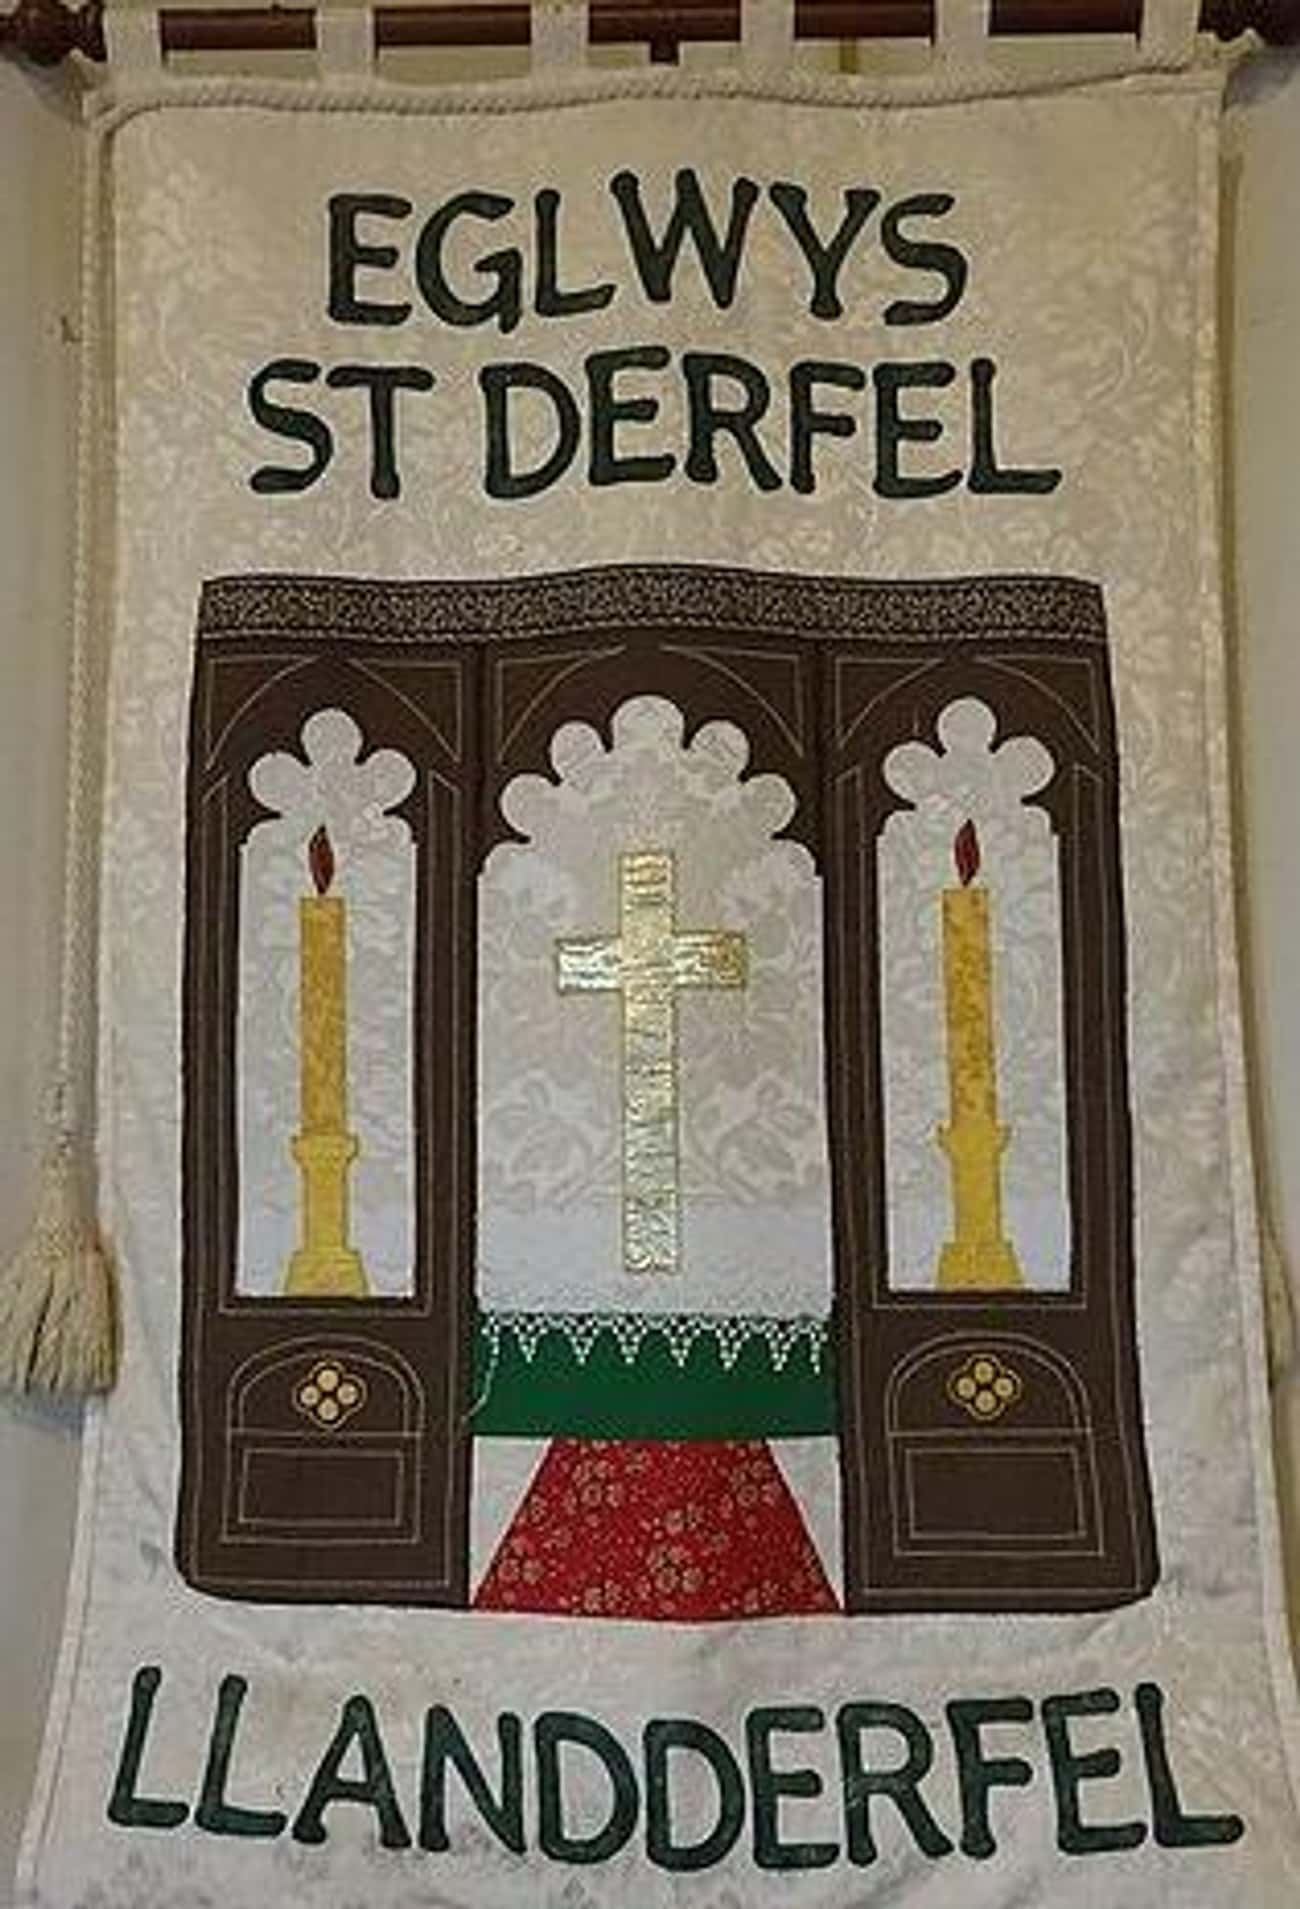 St. Derfel Of Wales Purportedly Fought Alongside King Arthur